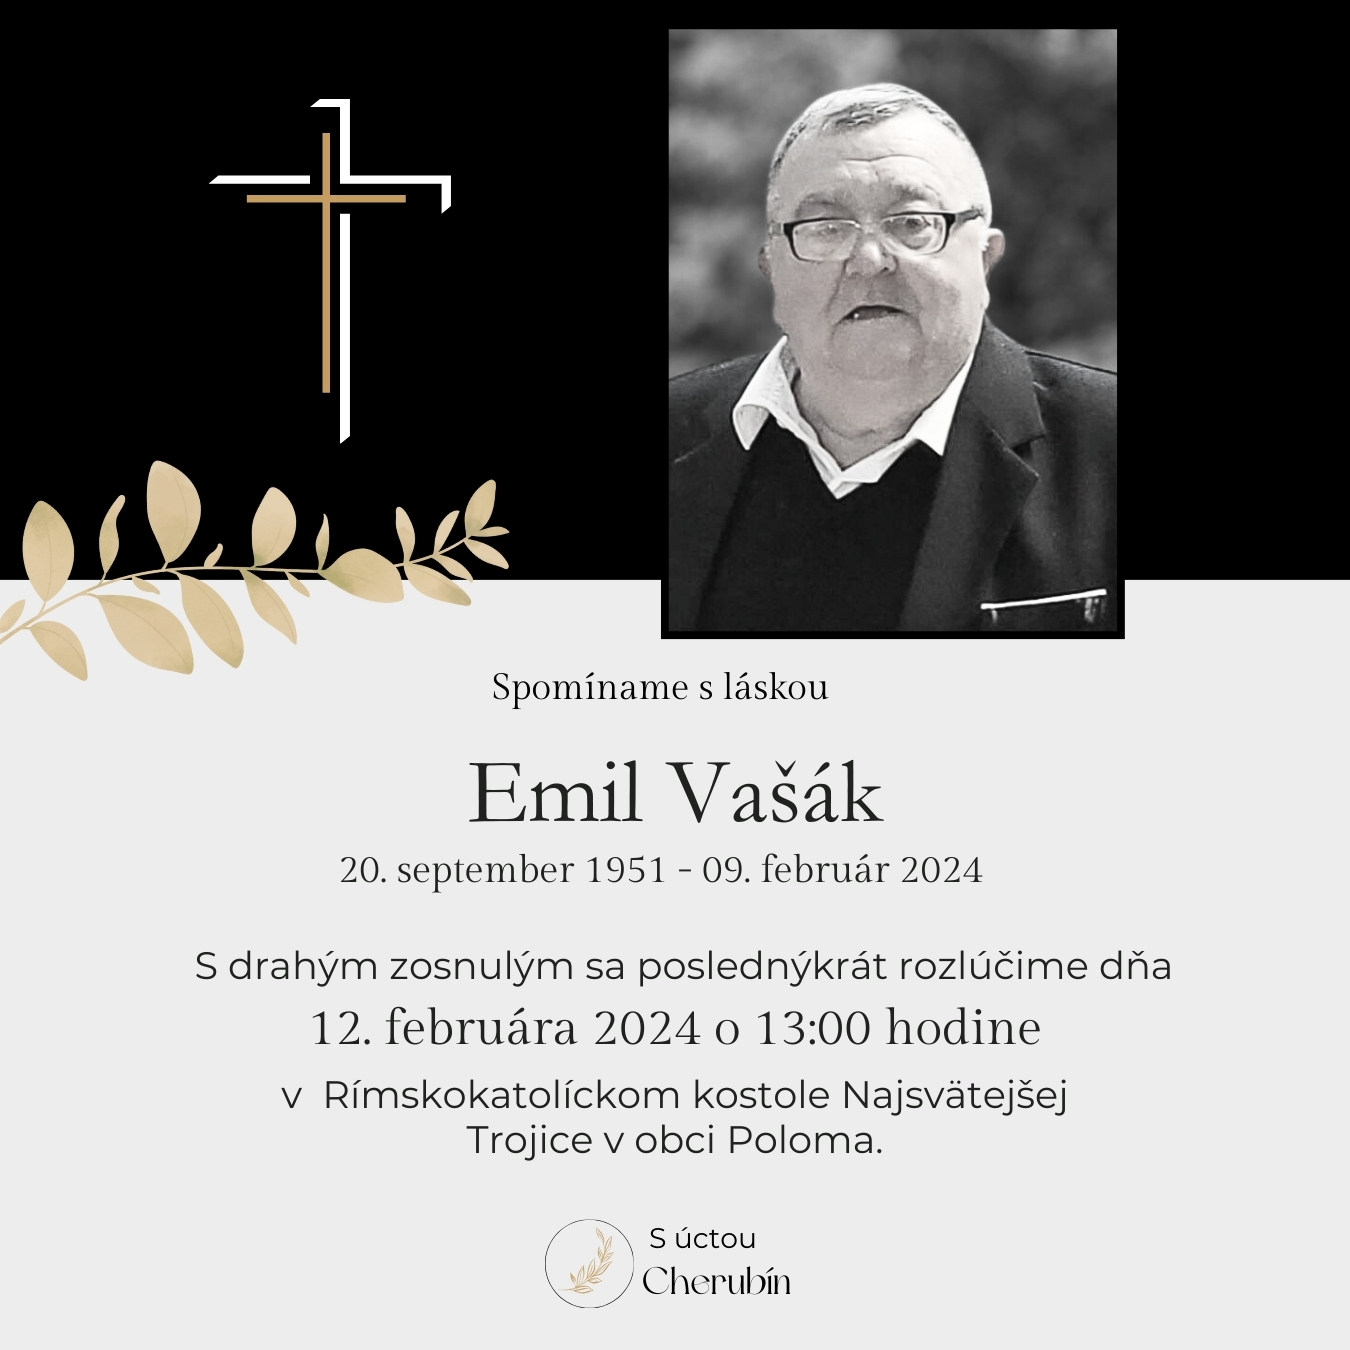 Emil Vašák